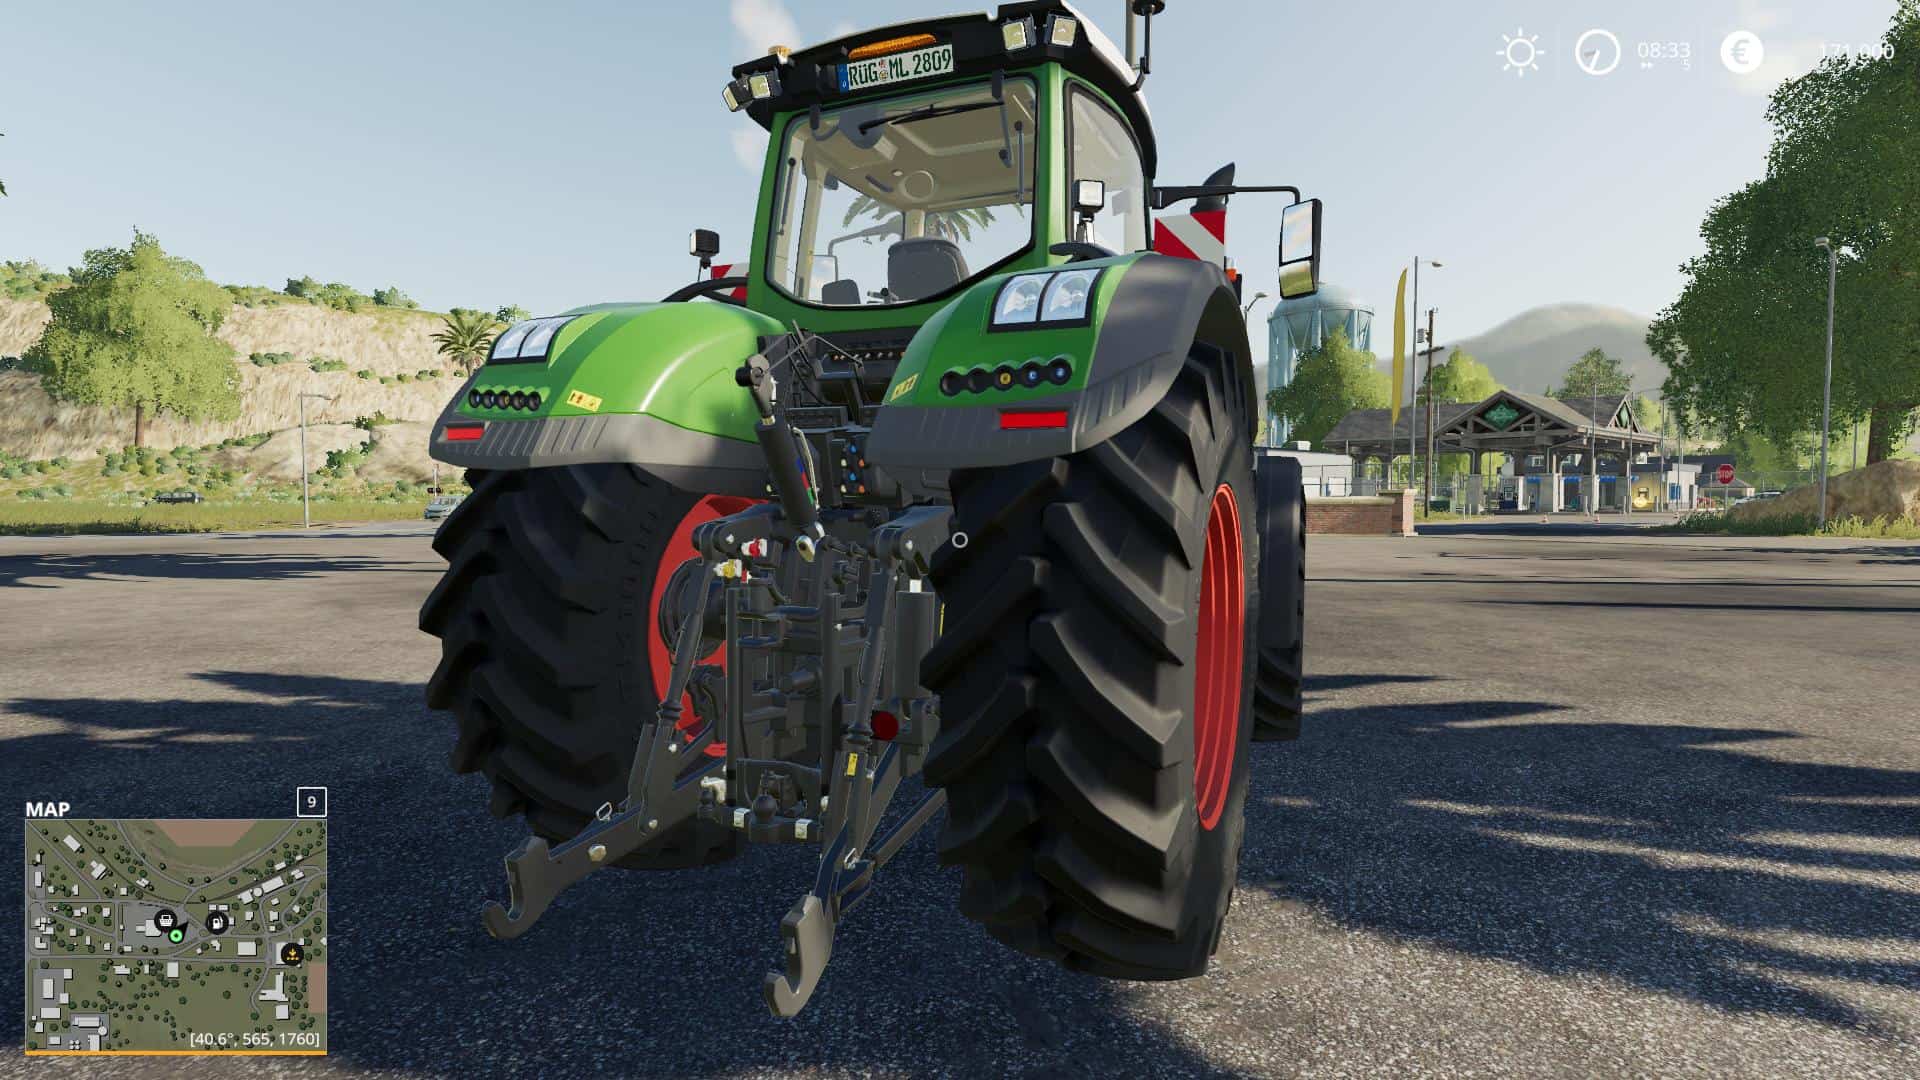 Fendt 1000 Im Agrarservice Mv Desing V1000 Fs19 Farming Simulator Images And Photos Finder 1643